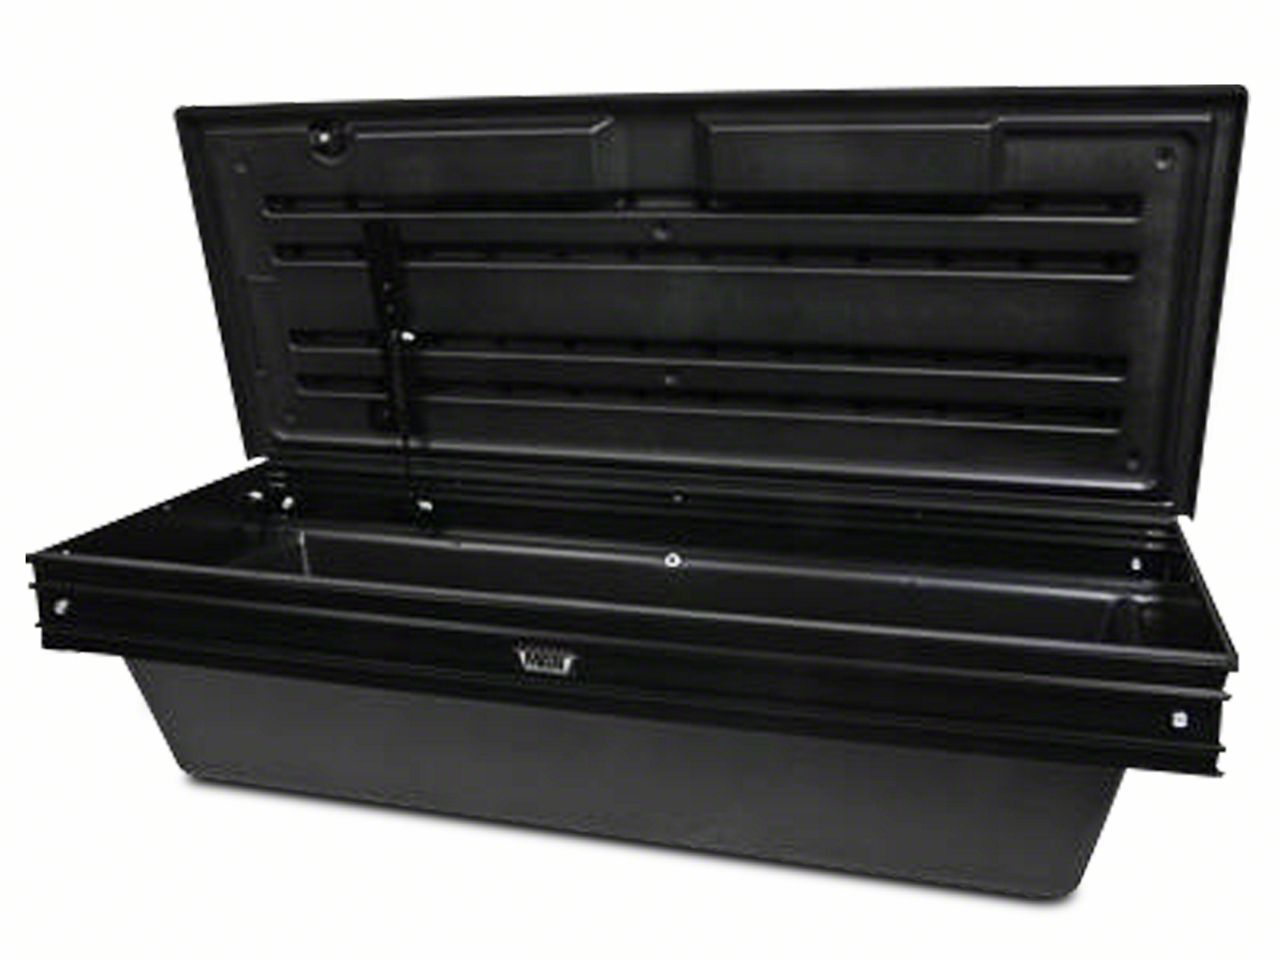 Silverado3500 Tool Boxes & Bed Storage 2007-2014